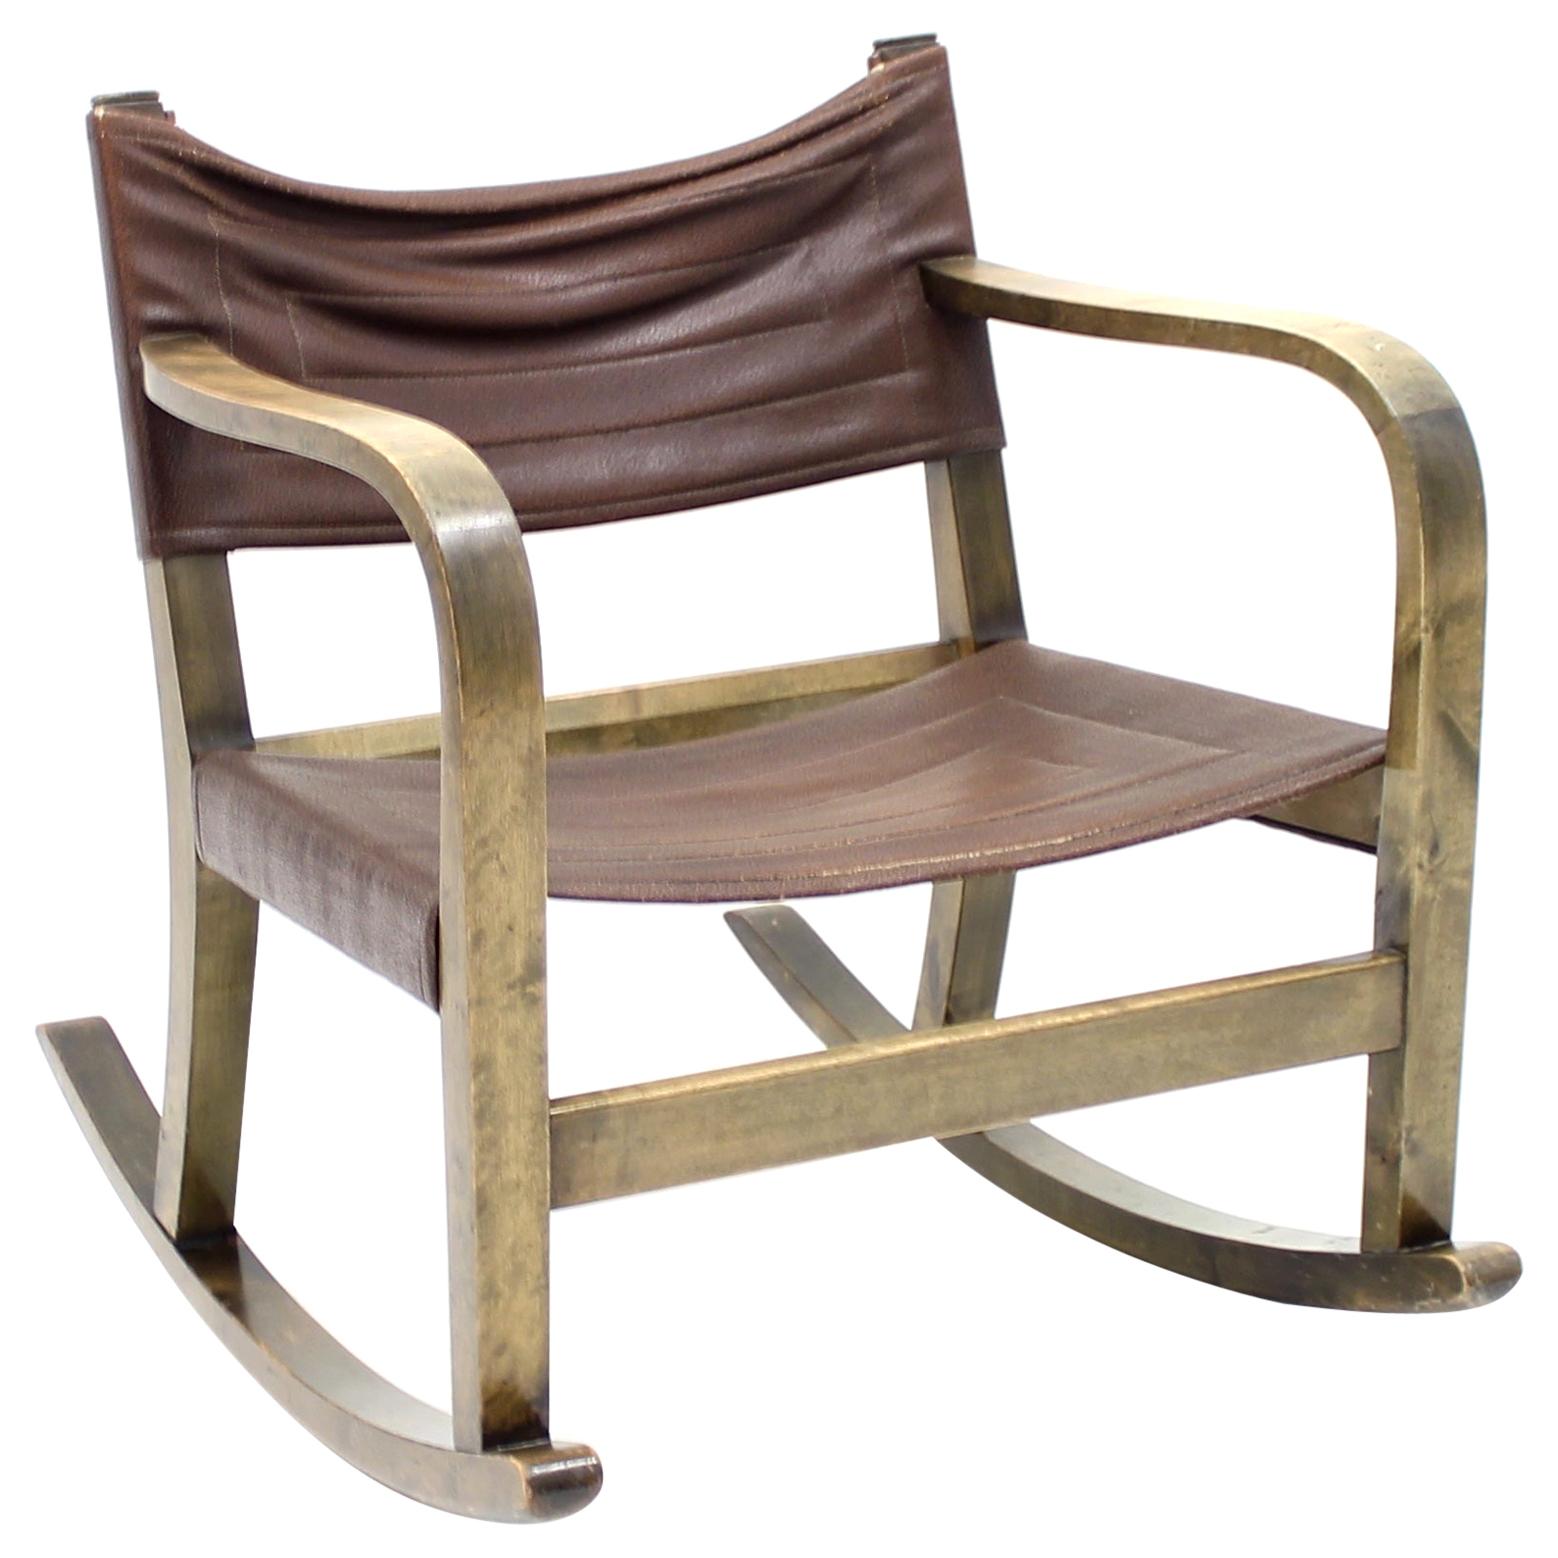 Eskil Sundahl Art Deco Rocking Chair for Bodafors, 1930s For Sale